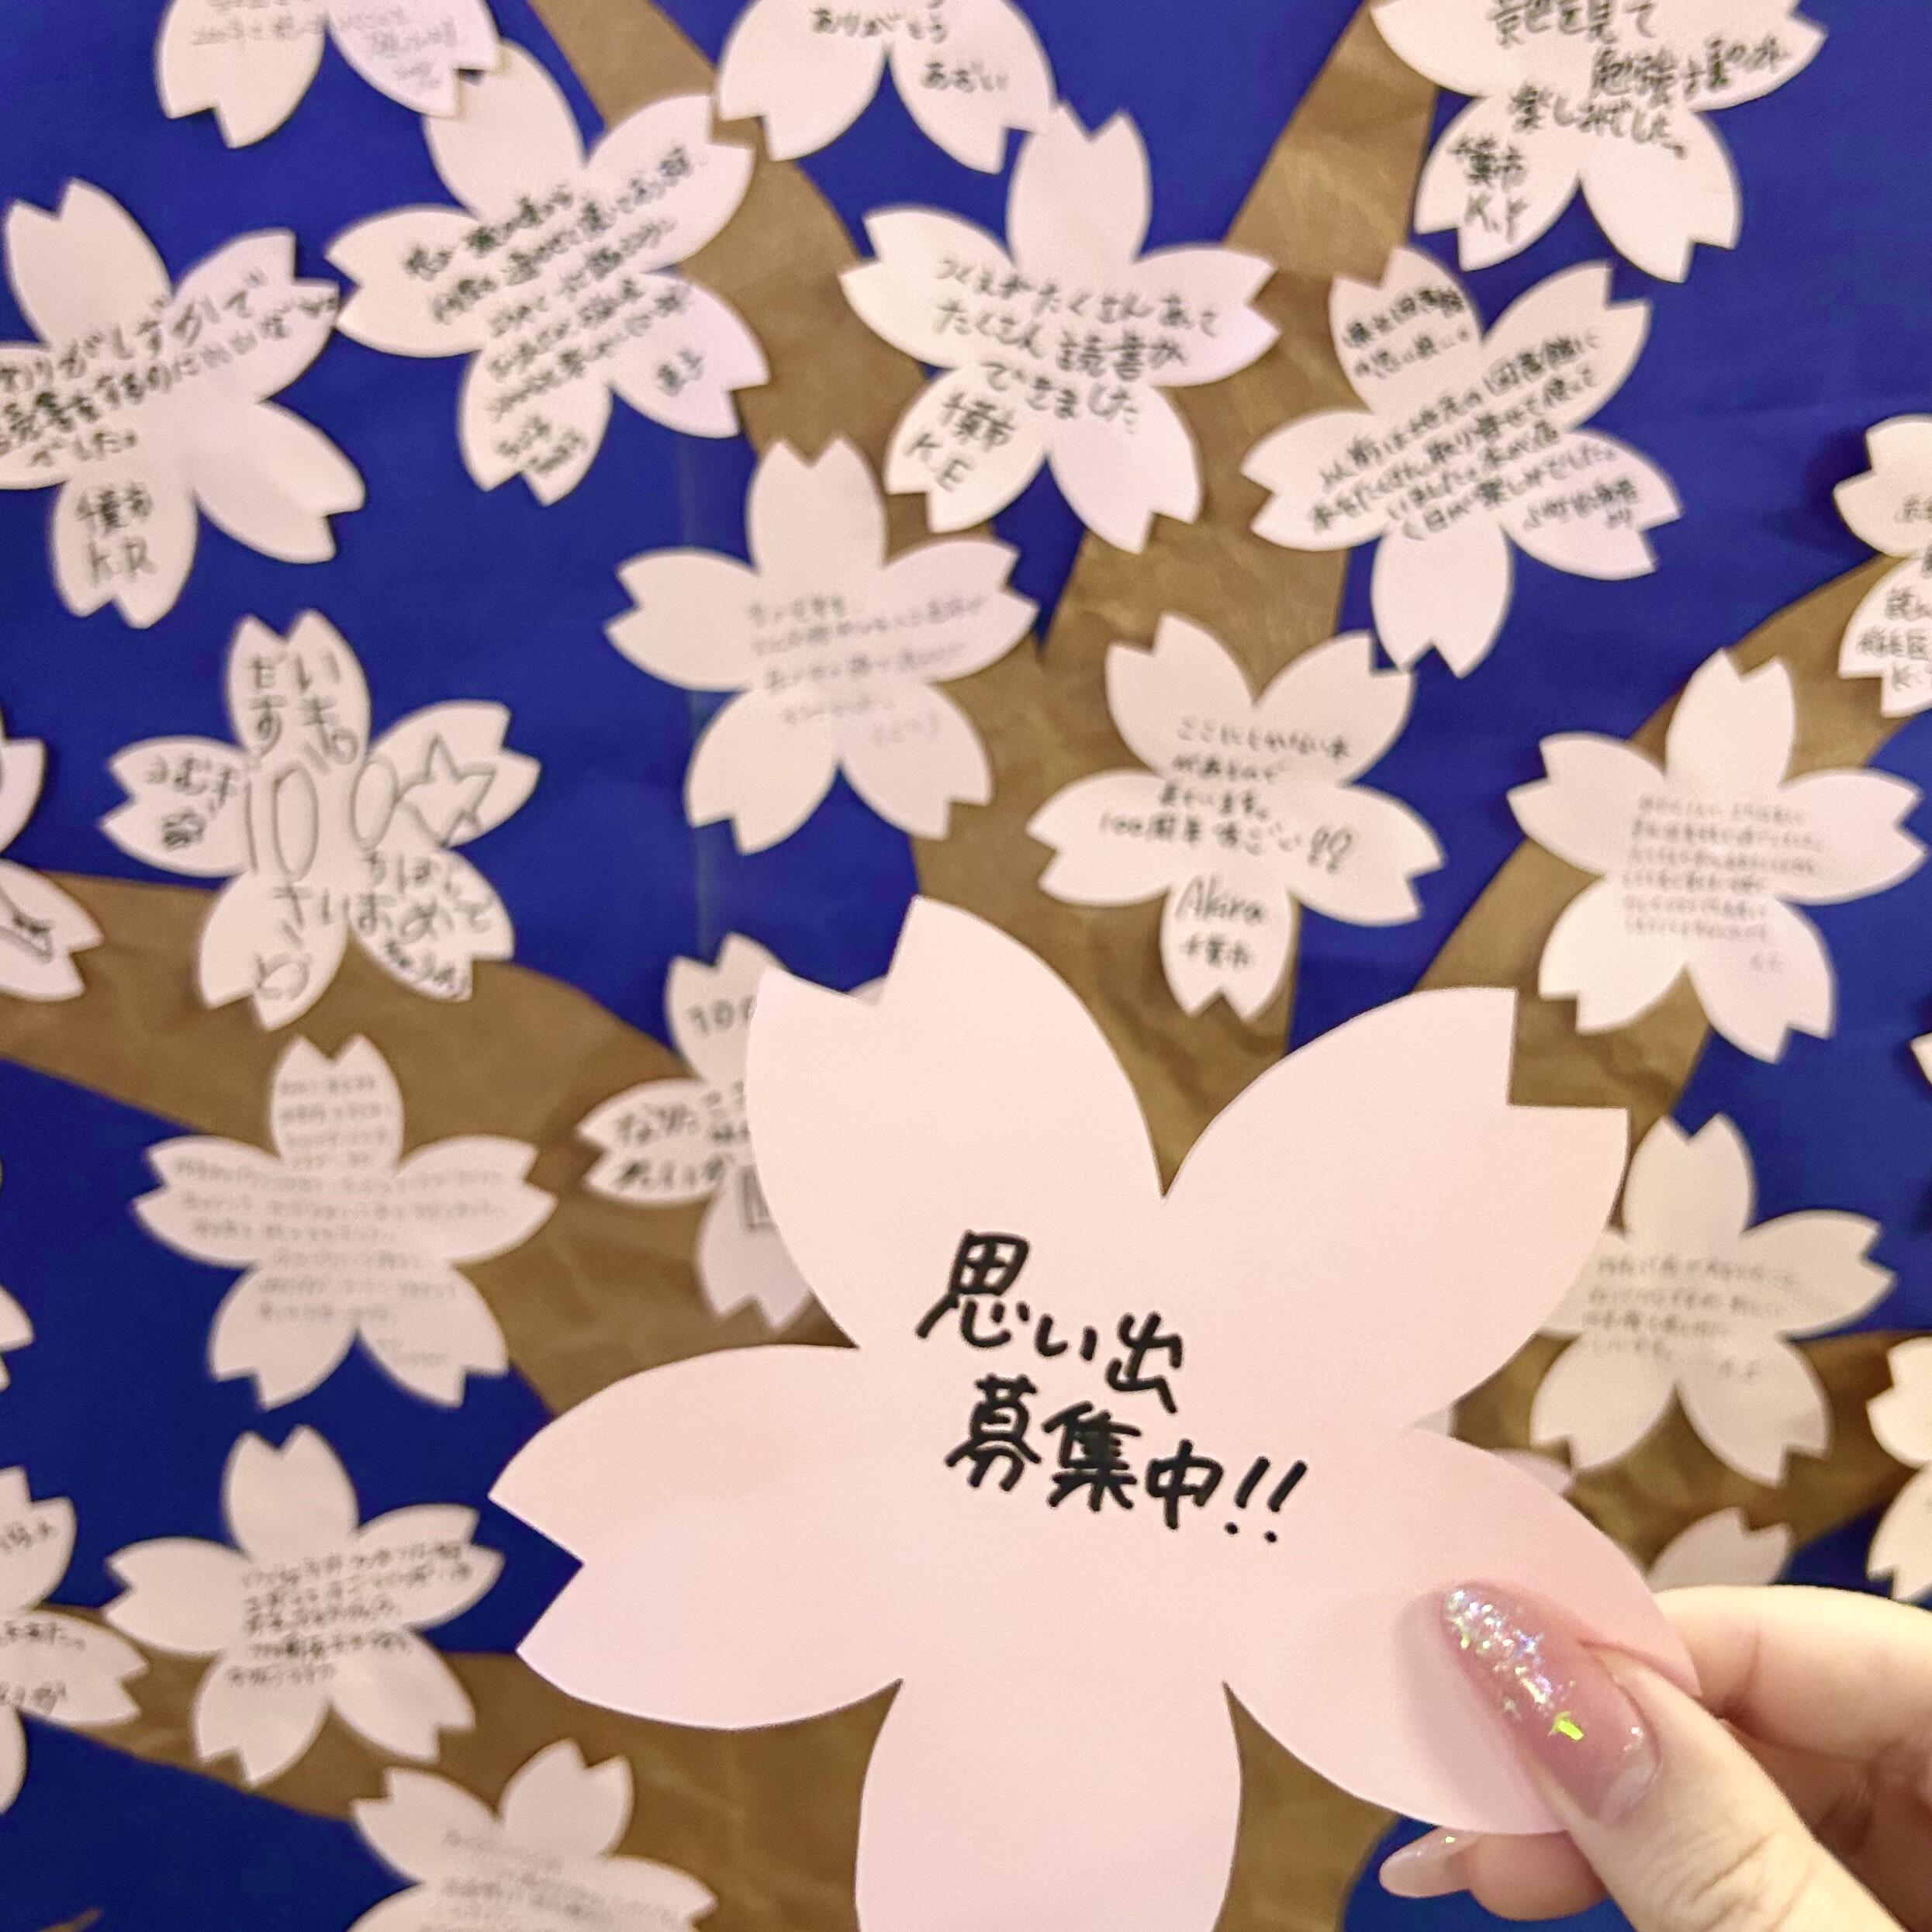 桜の形をしたメッセージカードの写真